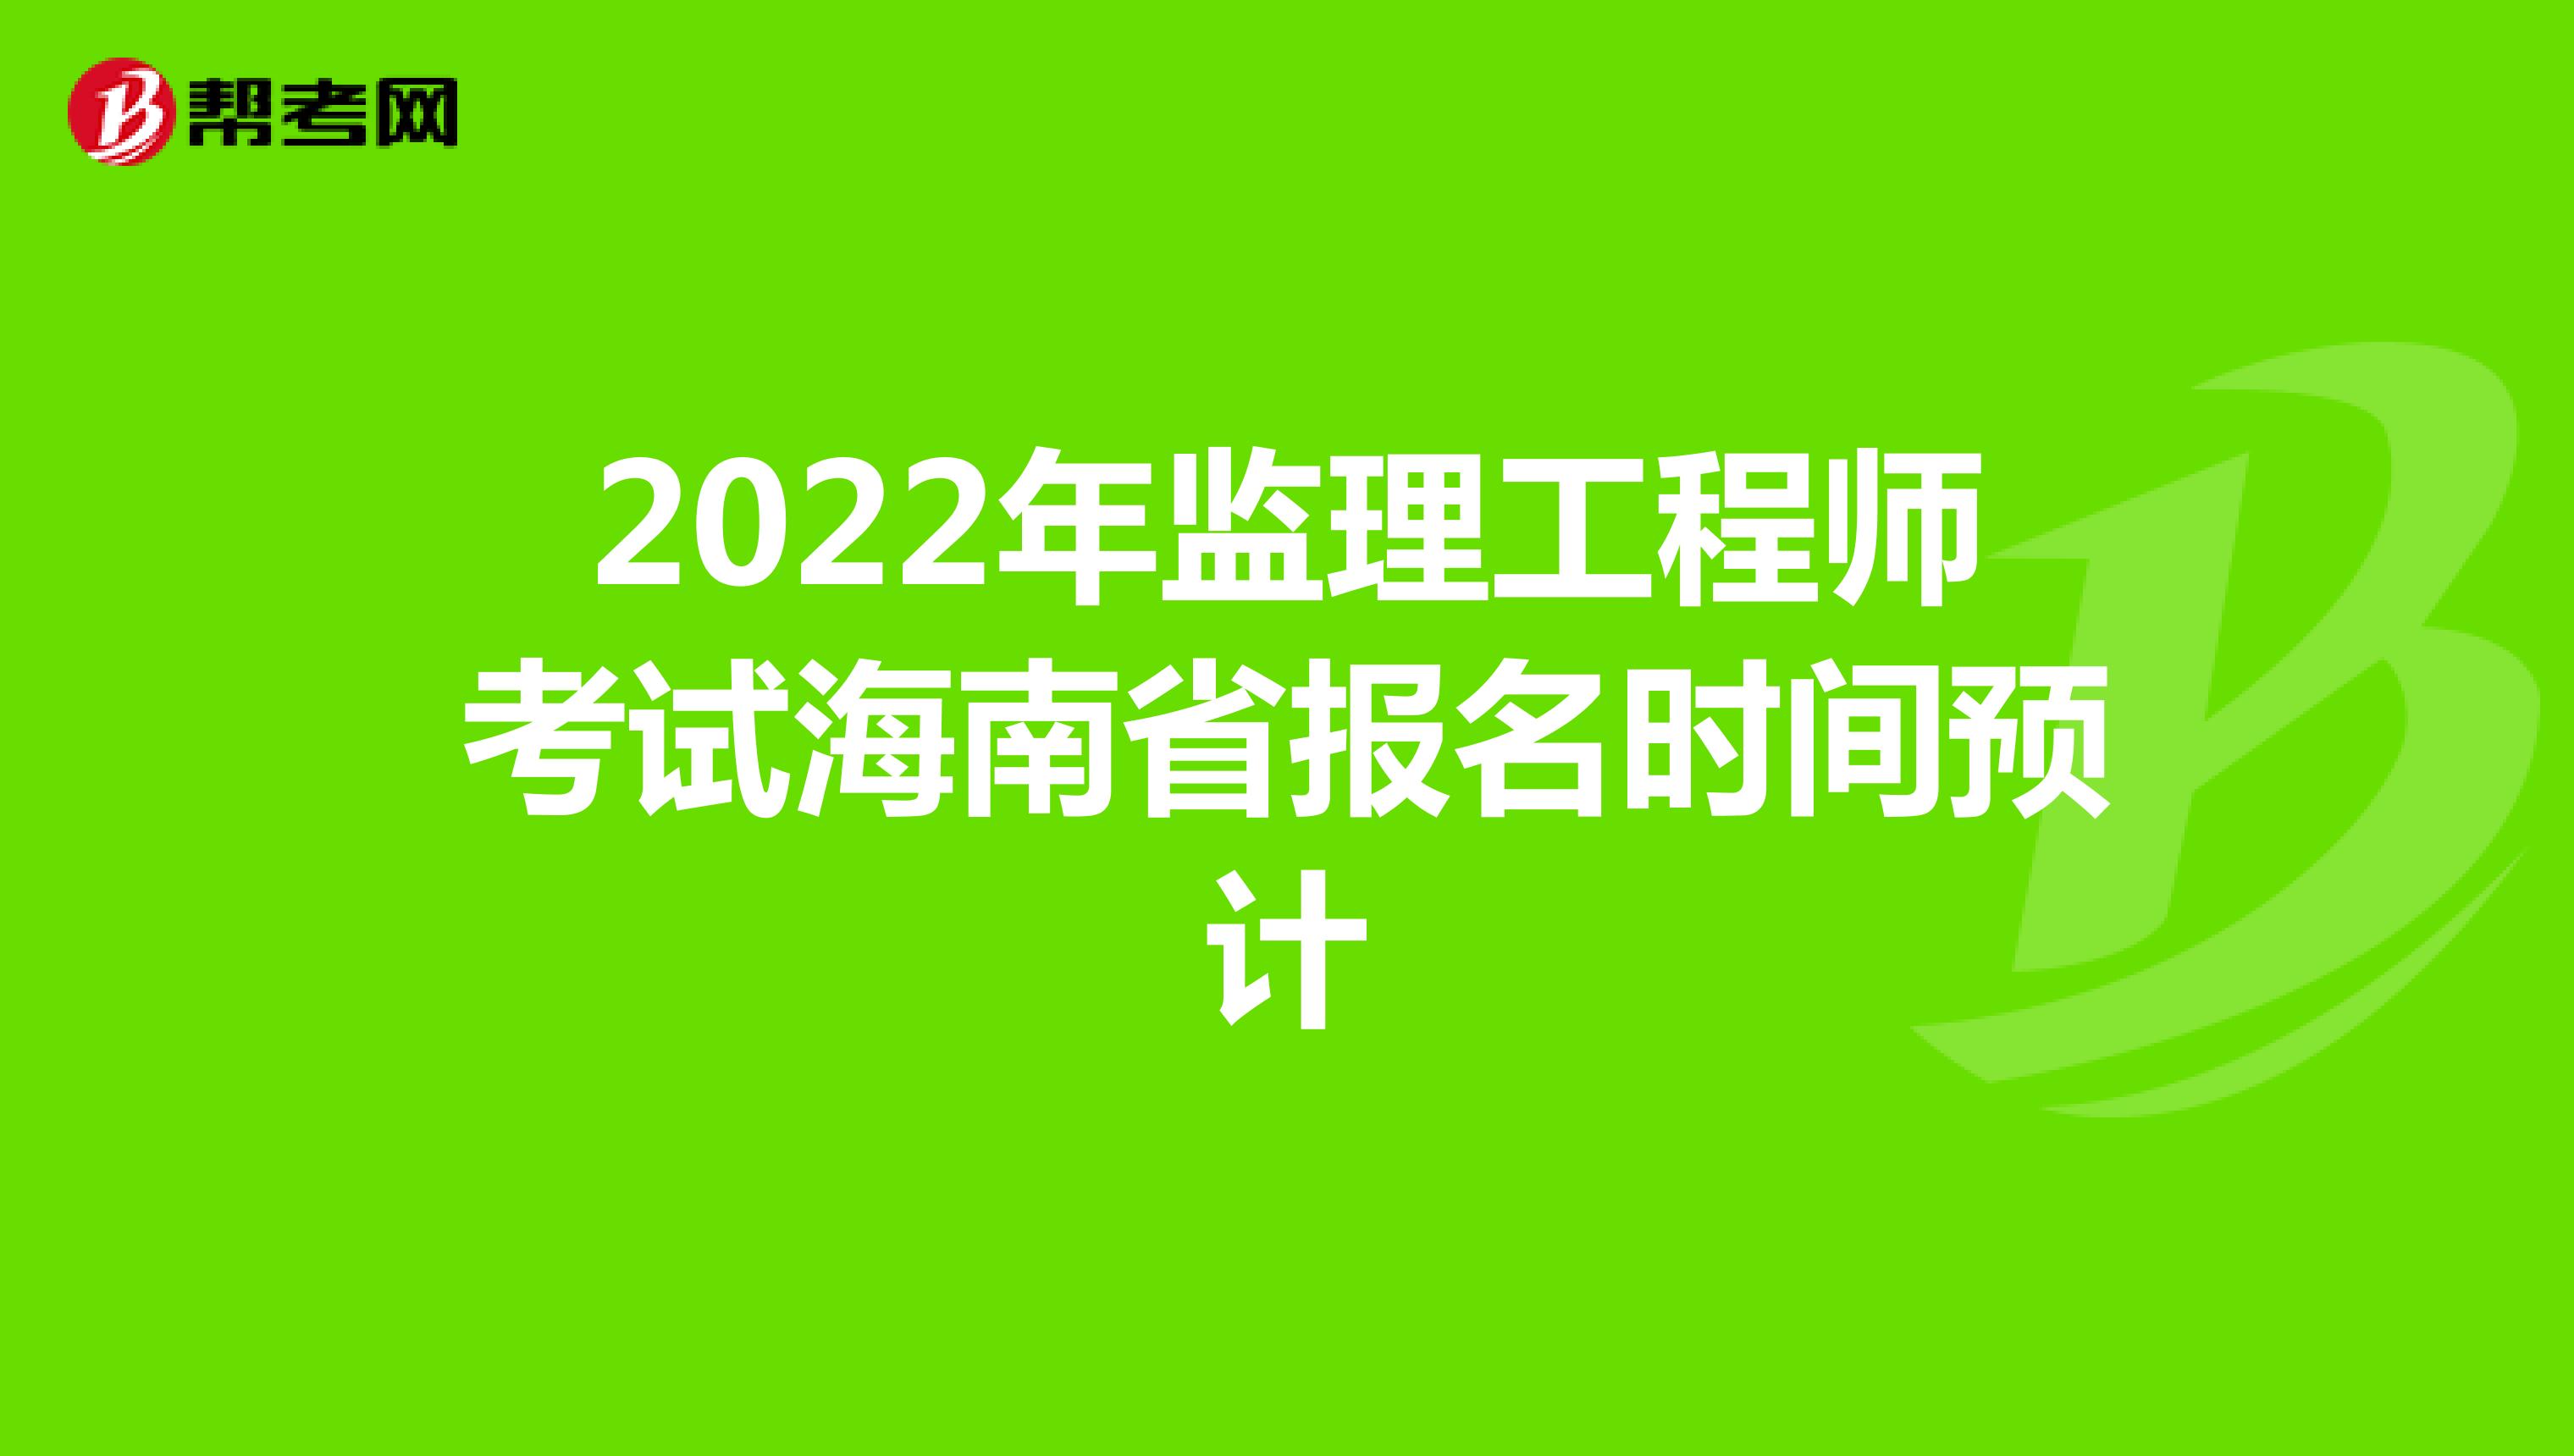 2022年监理工程师考试海南省报名时间预计